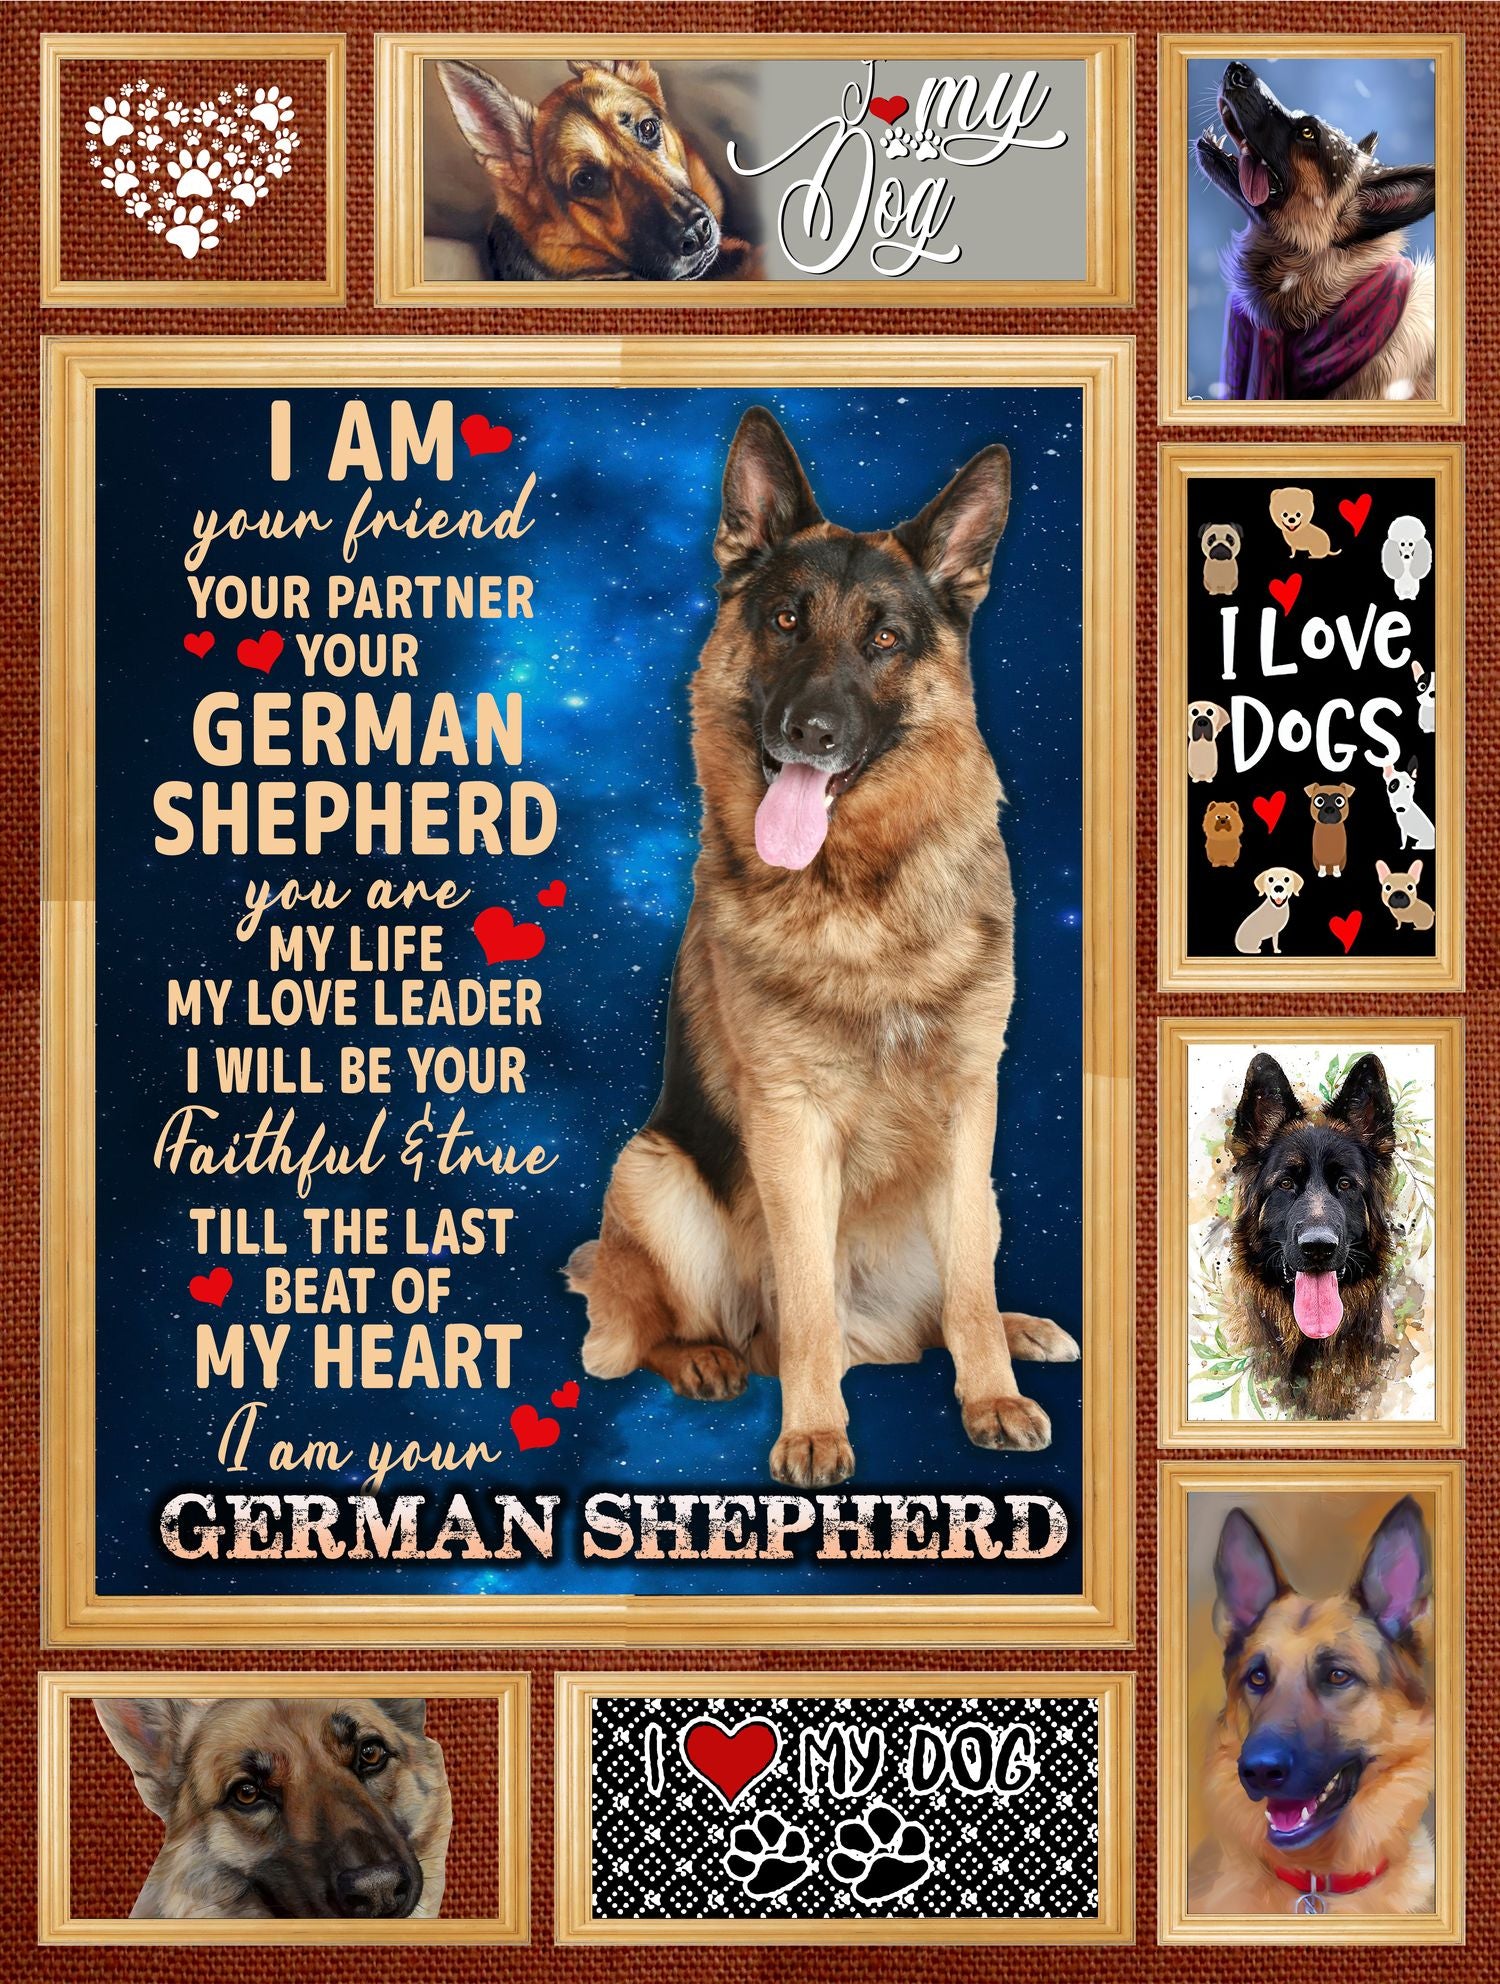 いとしてお Vth Global I Love My German Shepherd キルトパターン ブランケット 掛け布団 リバーシブル コットン キング クイーン フル ツインサイズ キル Ajimura Shop せんので